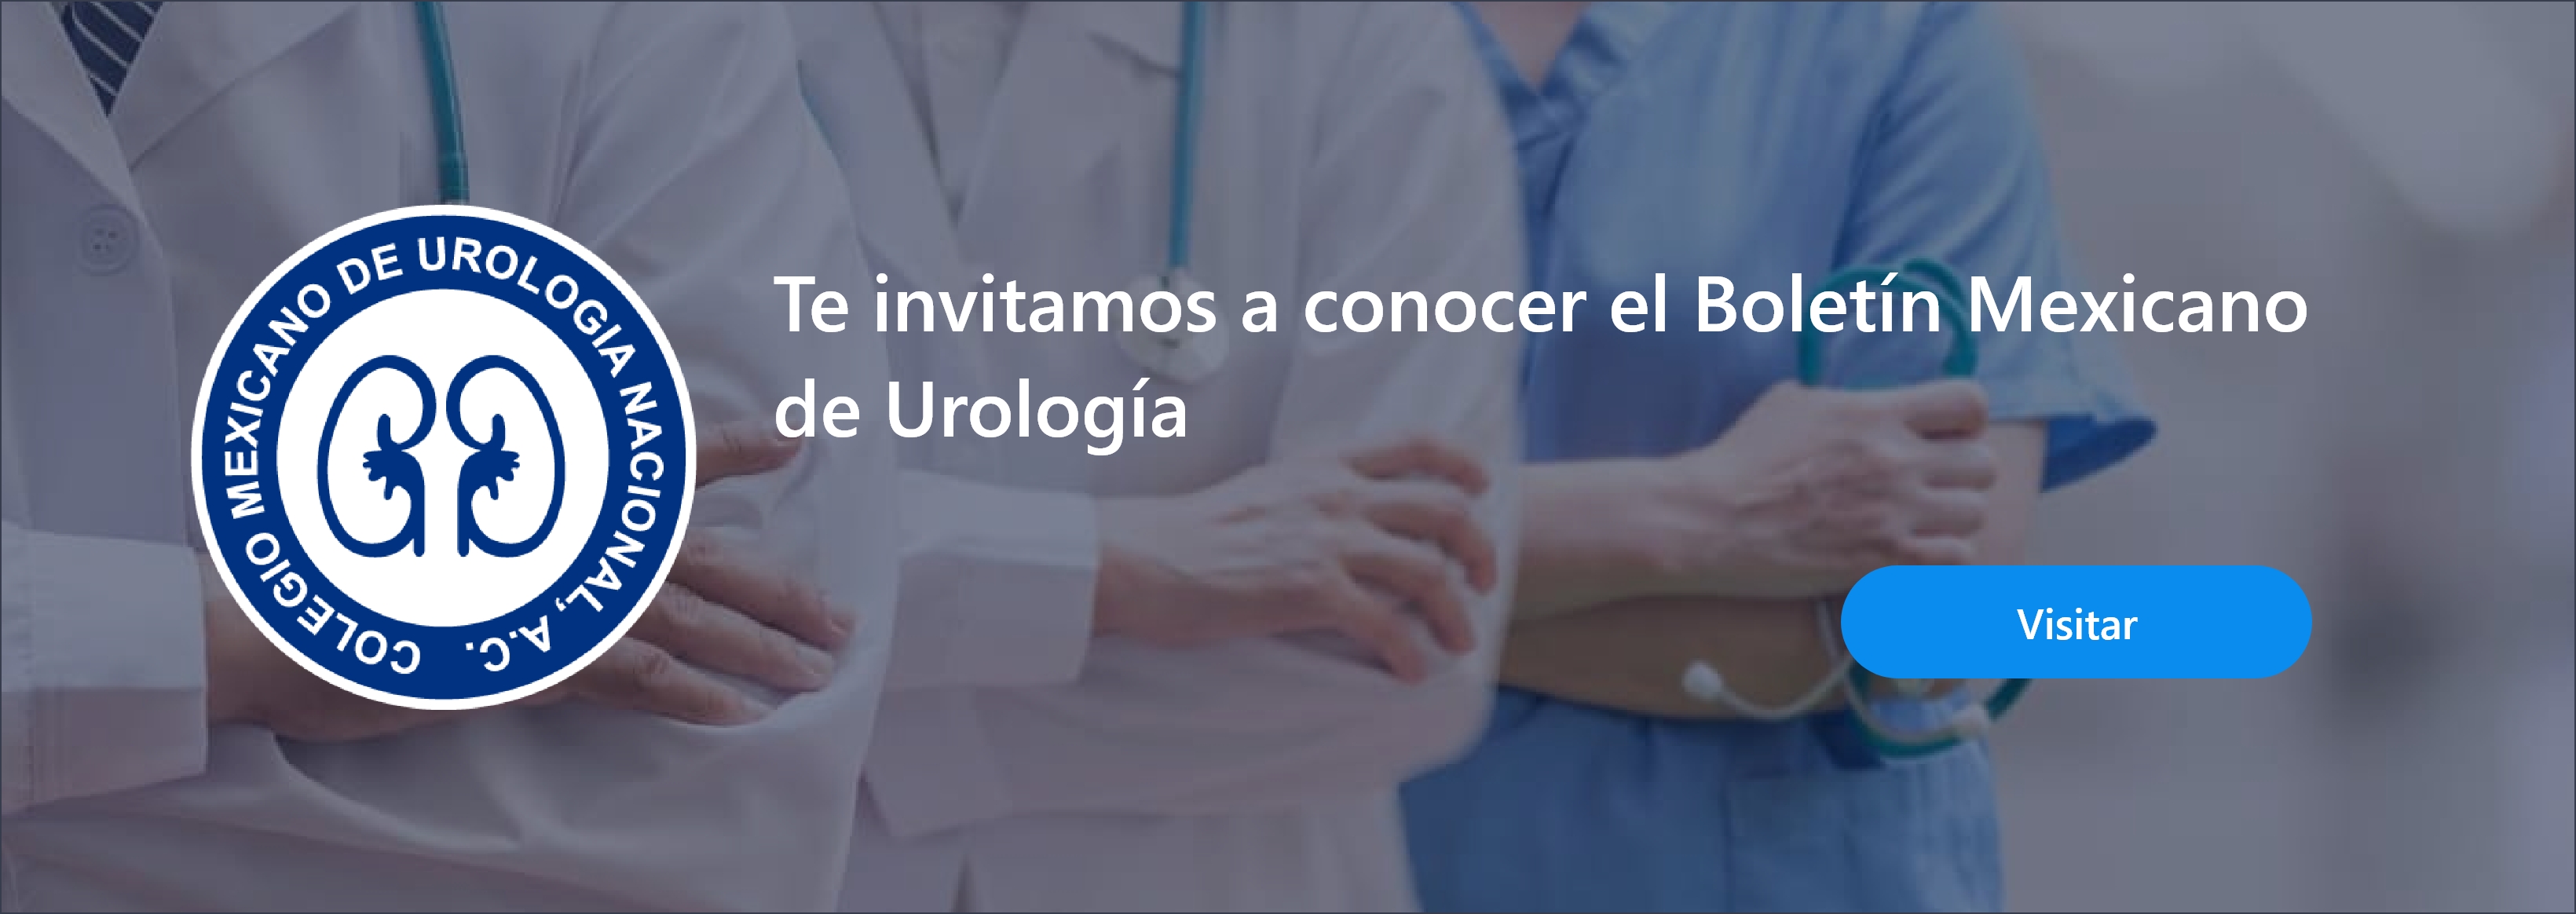 Visita el boletín mexicano de urología